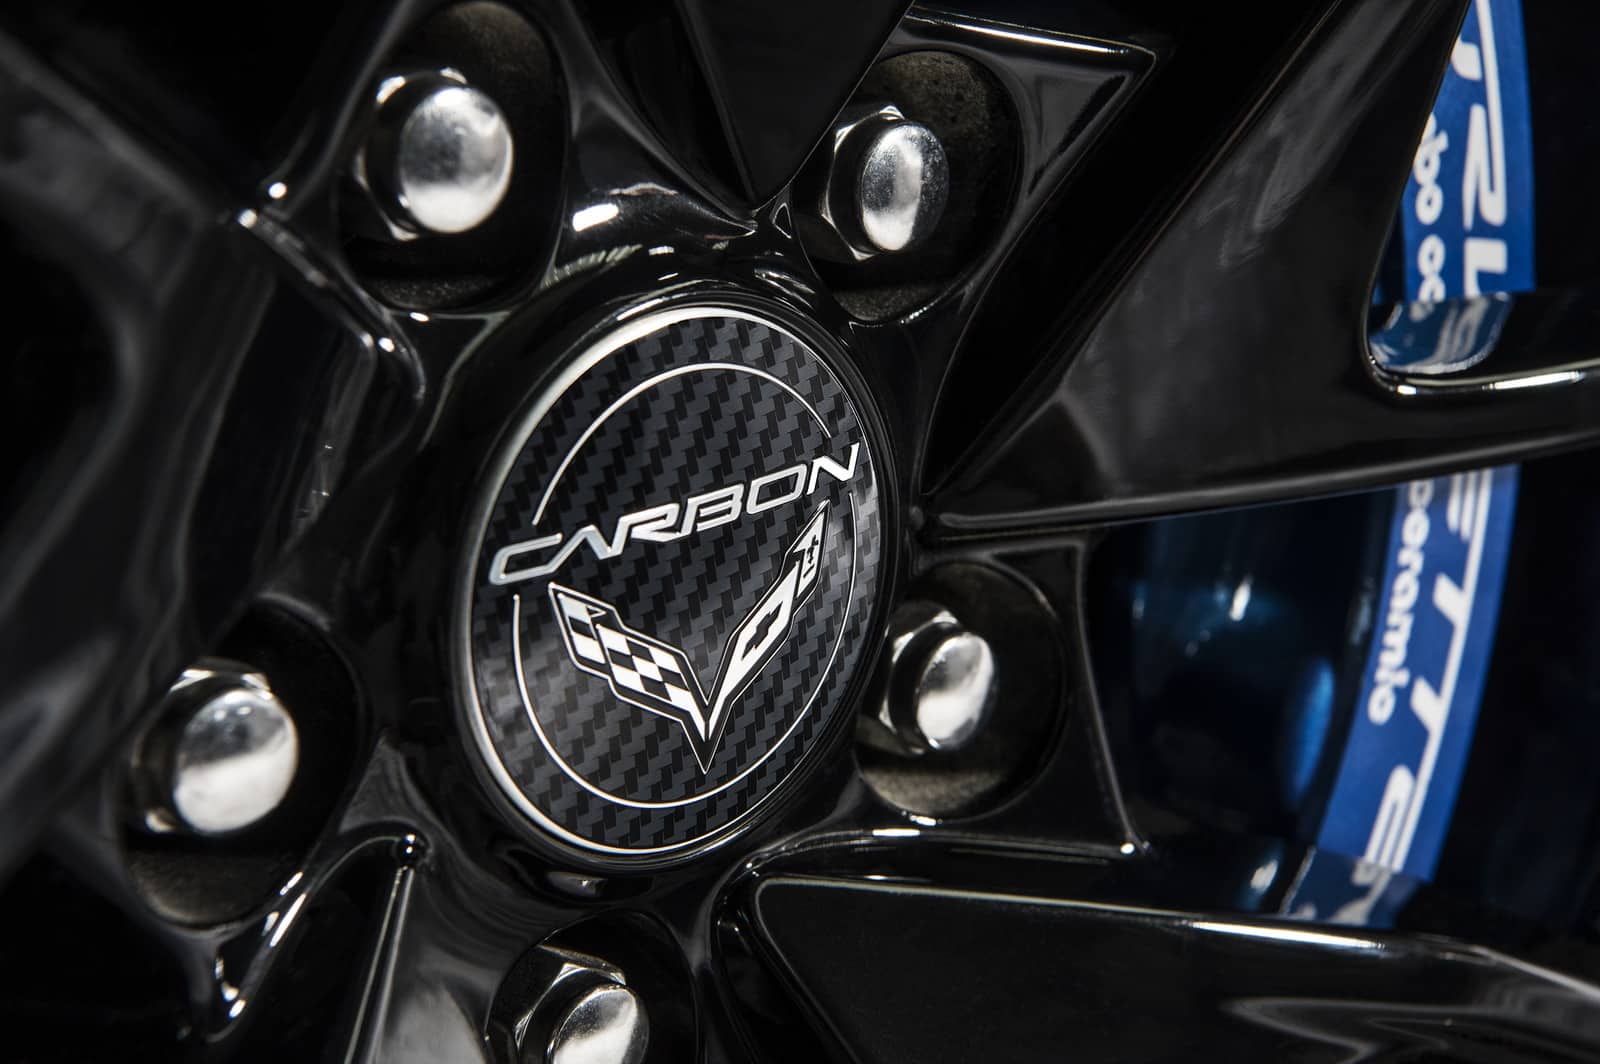 Official 2018 Chevrolet Corvette Carbon 65 Edition 7